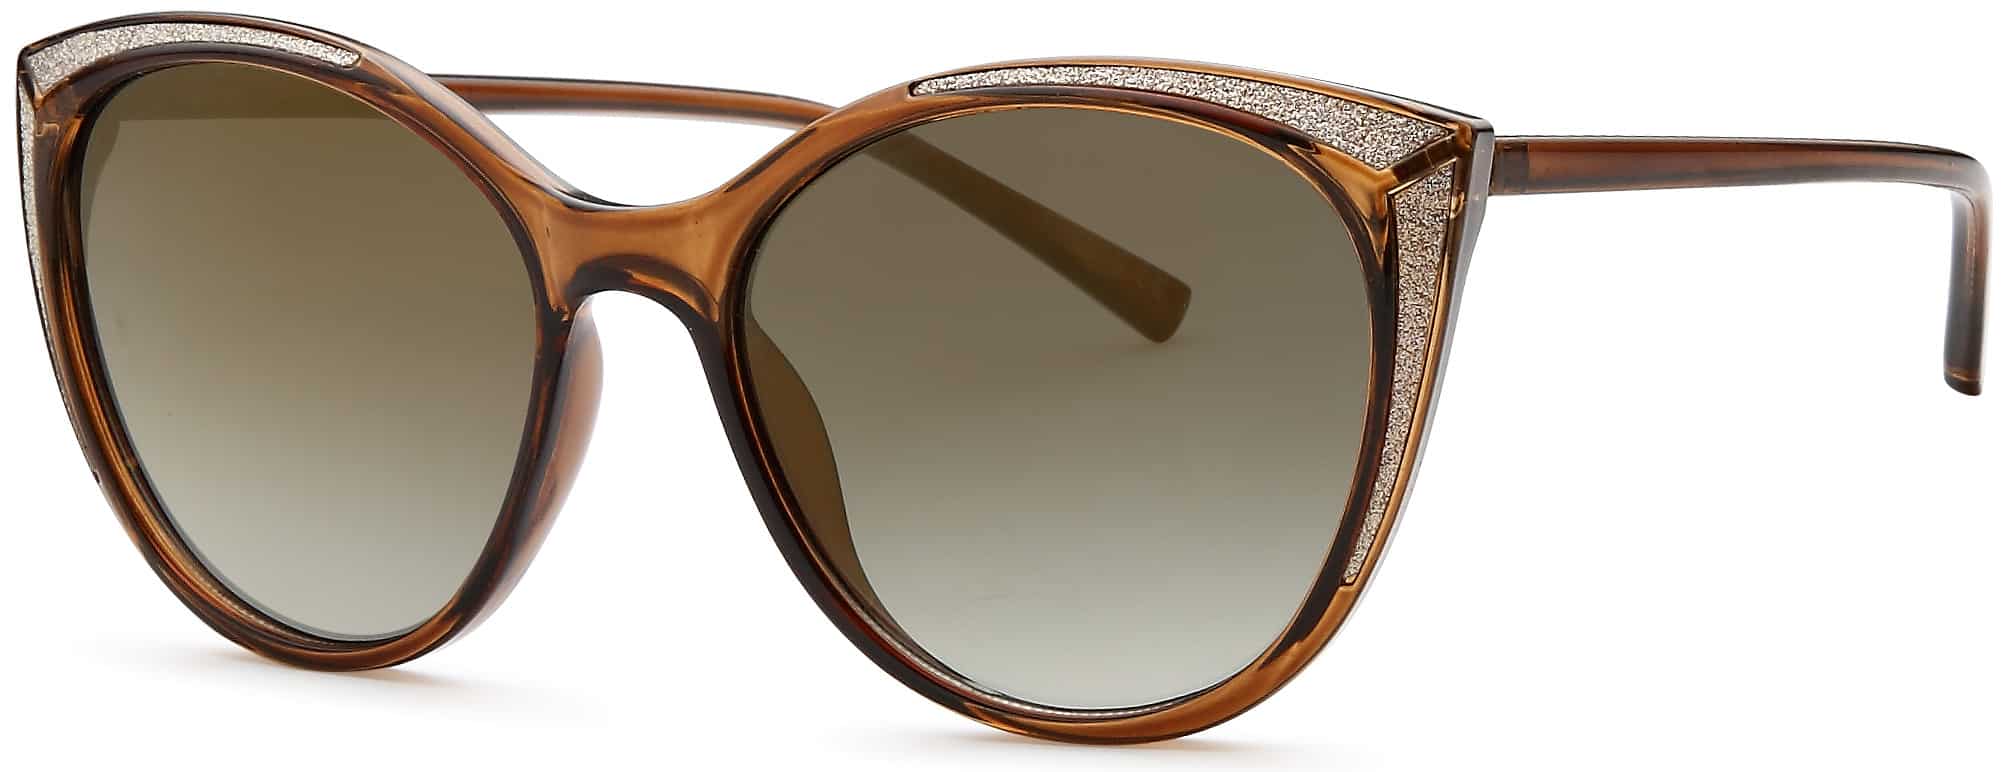 The Glider Women Sunglasses-Box of 12